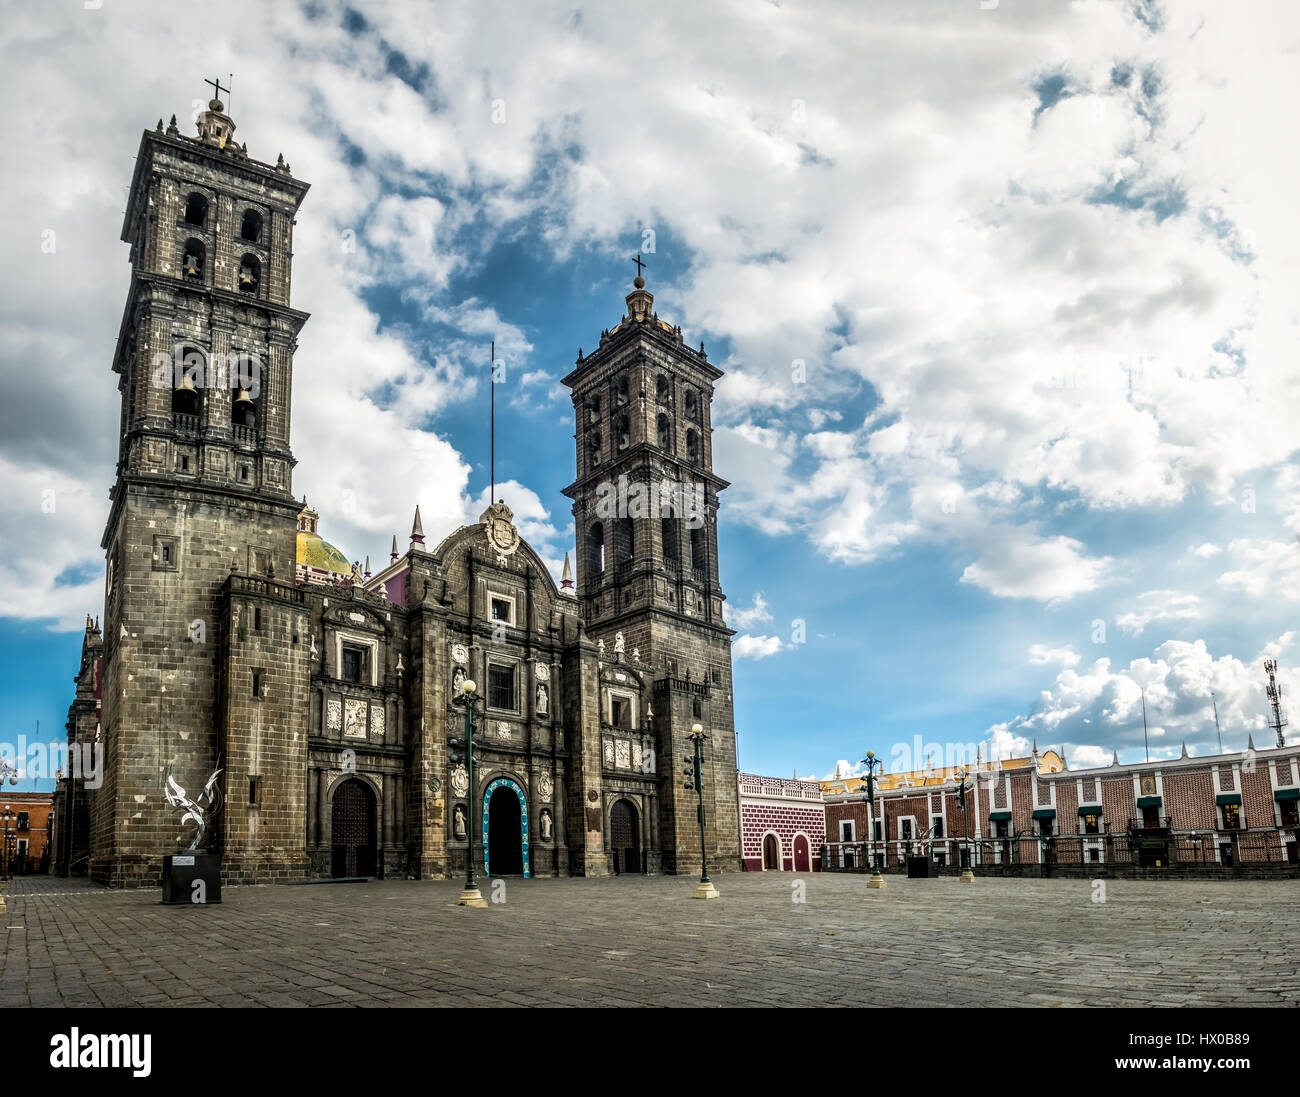 Fassade der Kathedrale von Puebla - Puebla, Mexiko Stockfoto